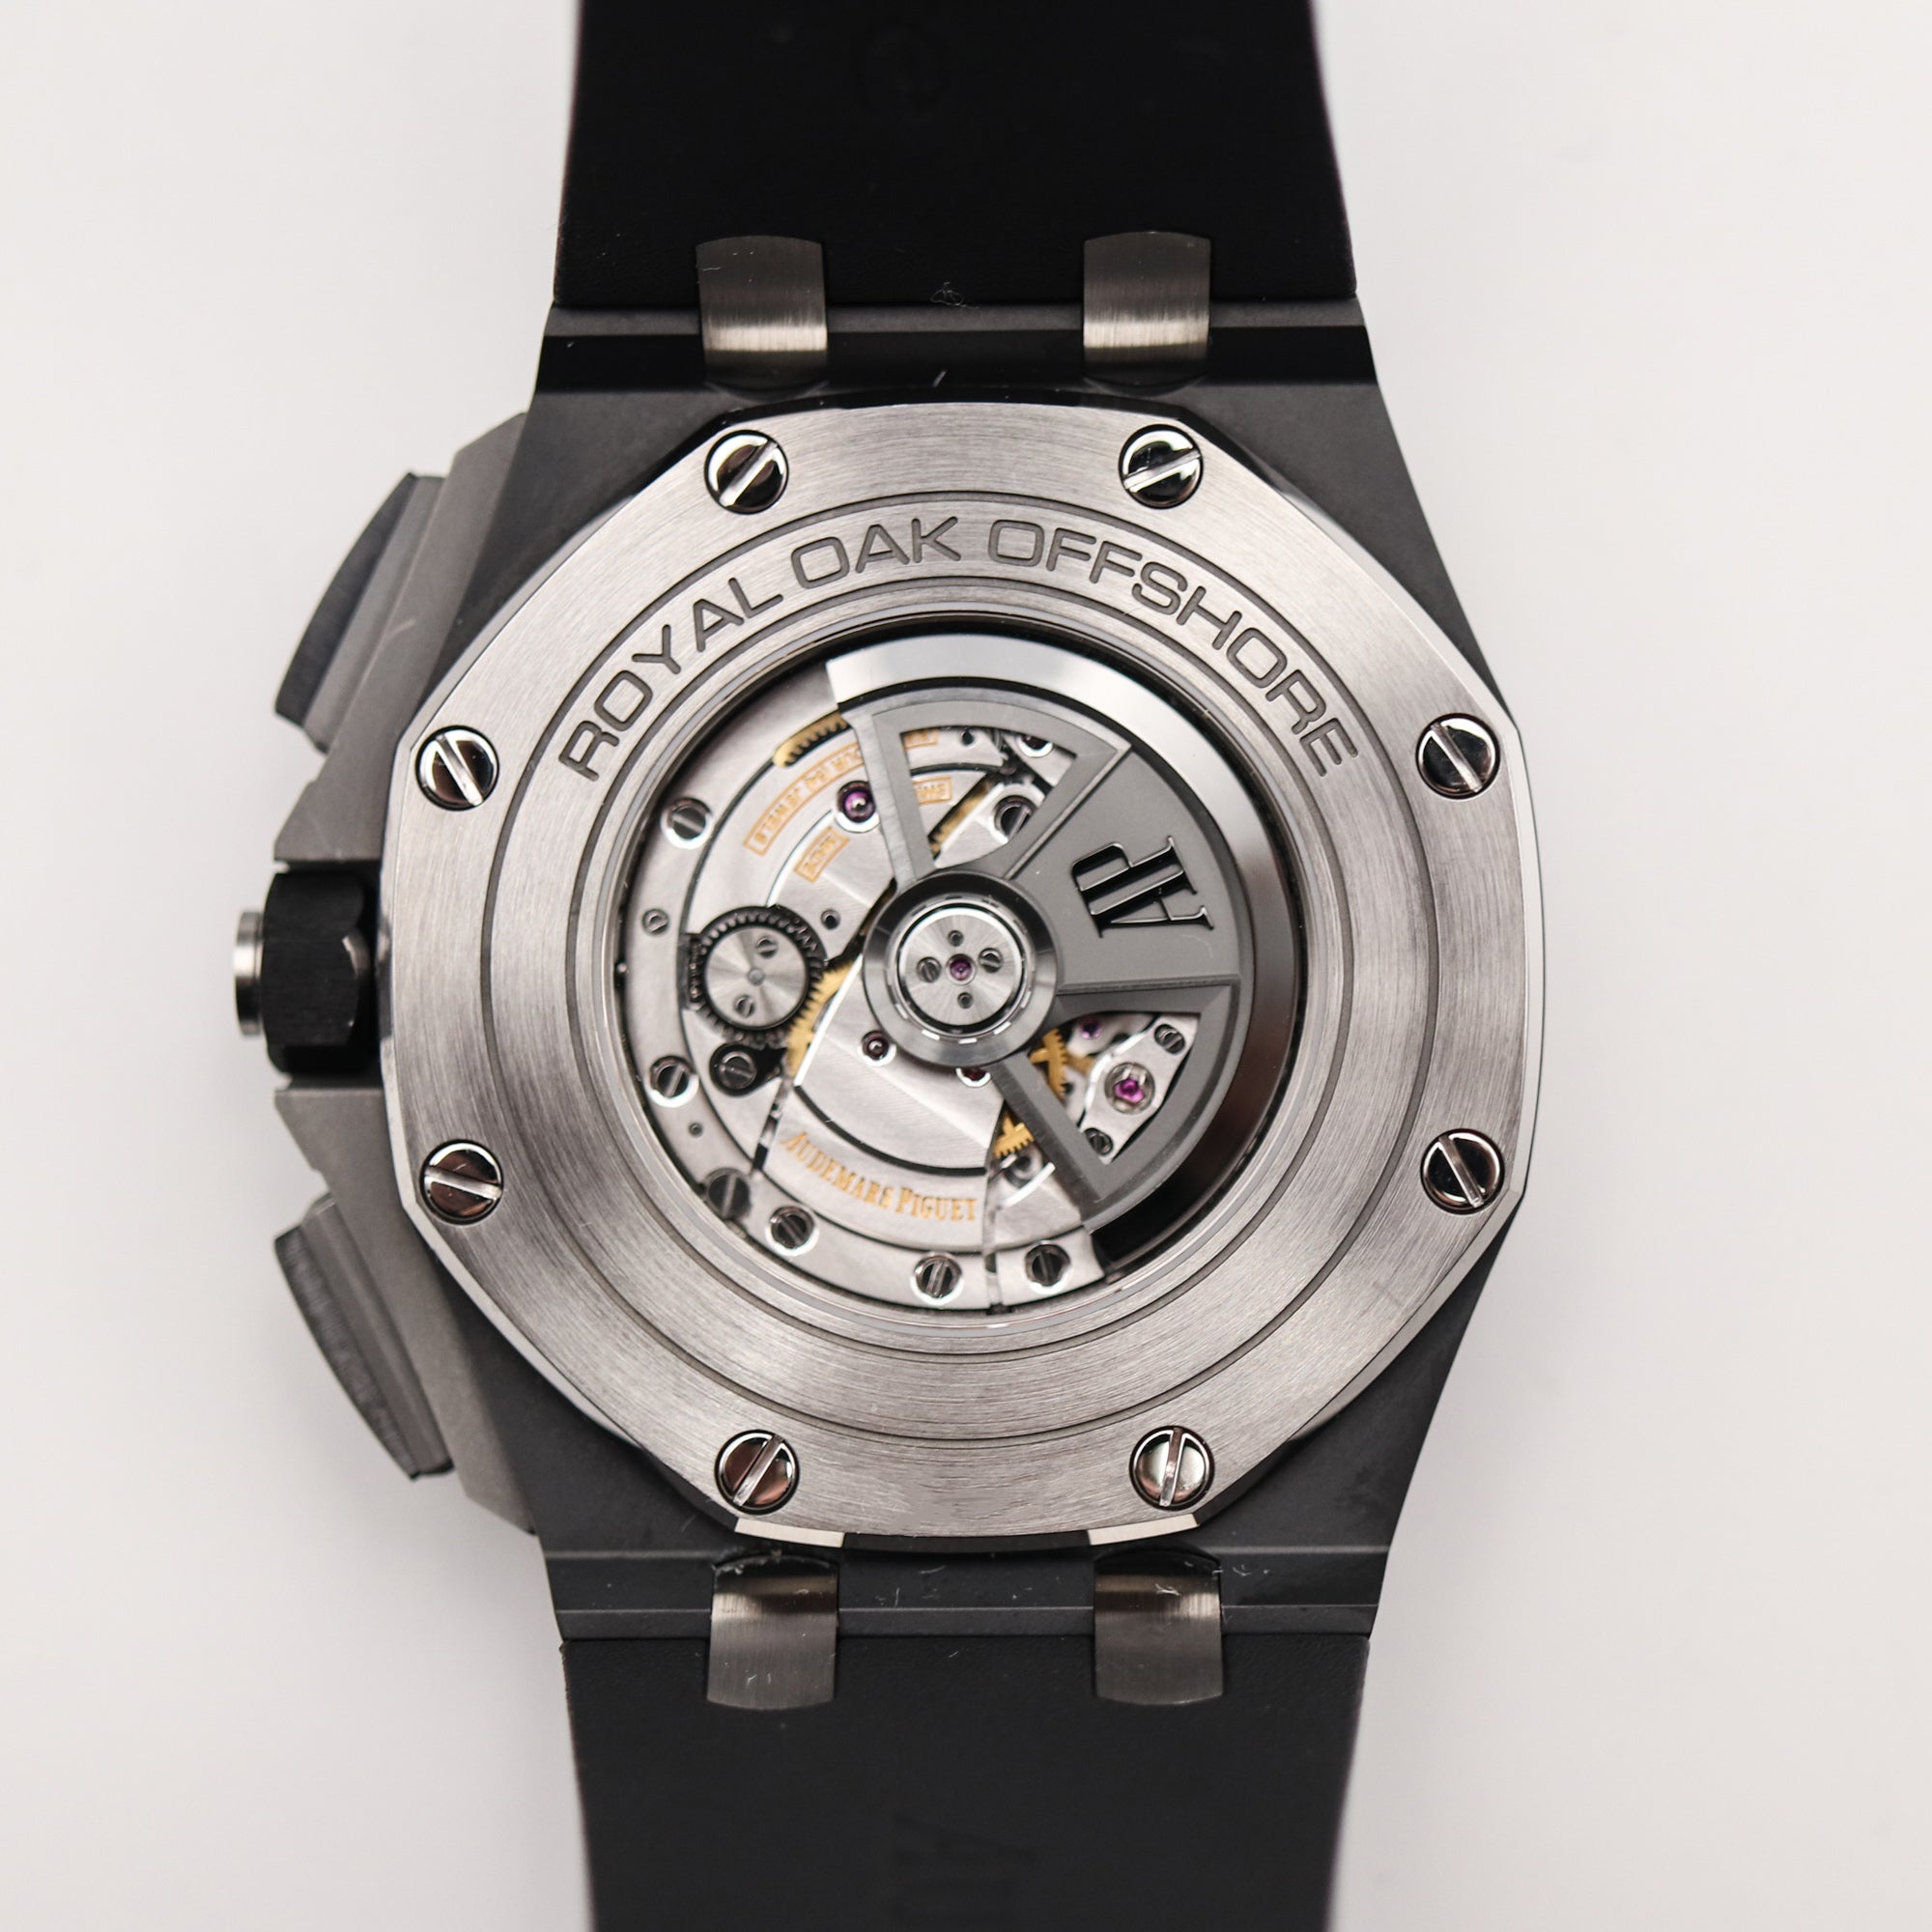 Audemars Piguet Royal Oak Offshore Chronograph Cermic Men's Watch